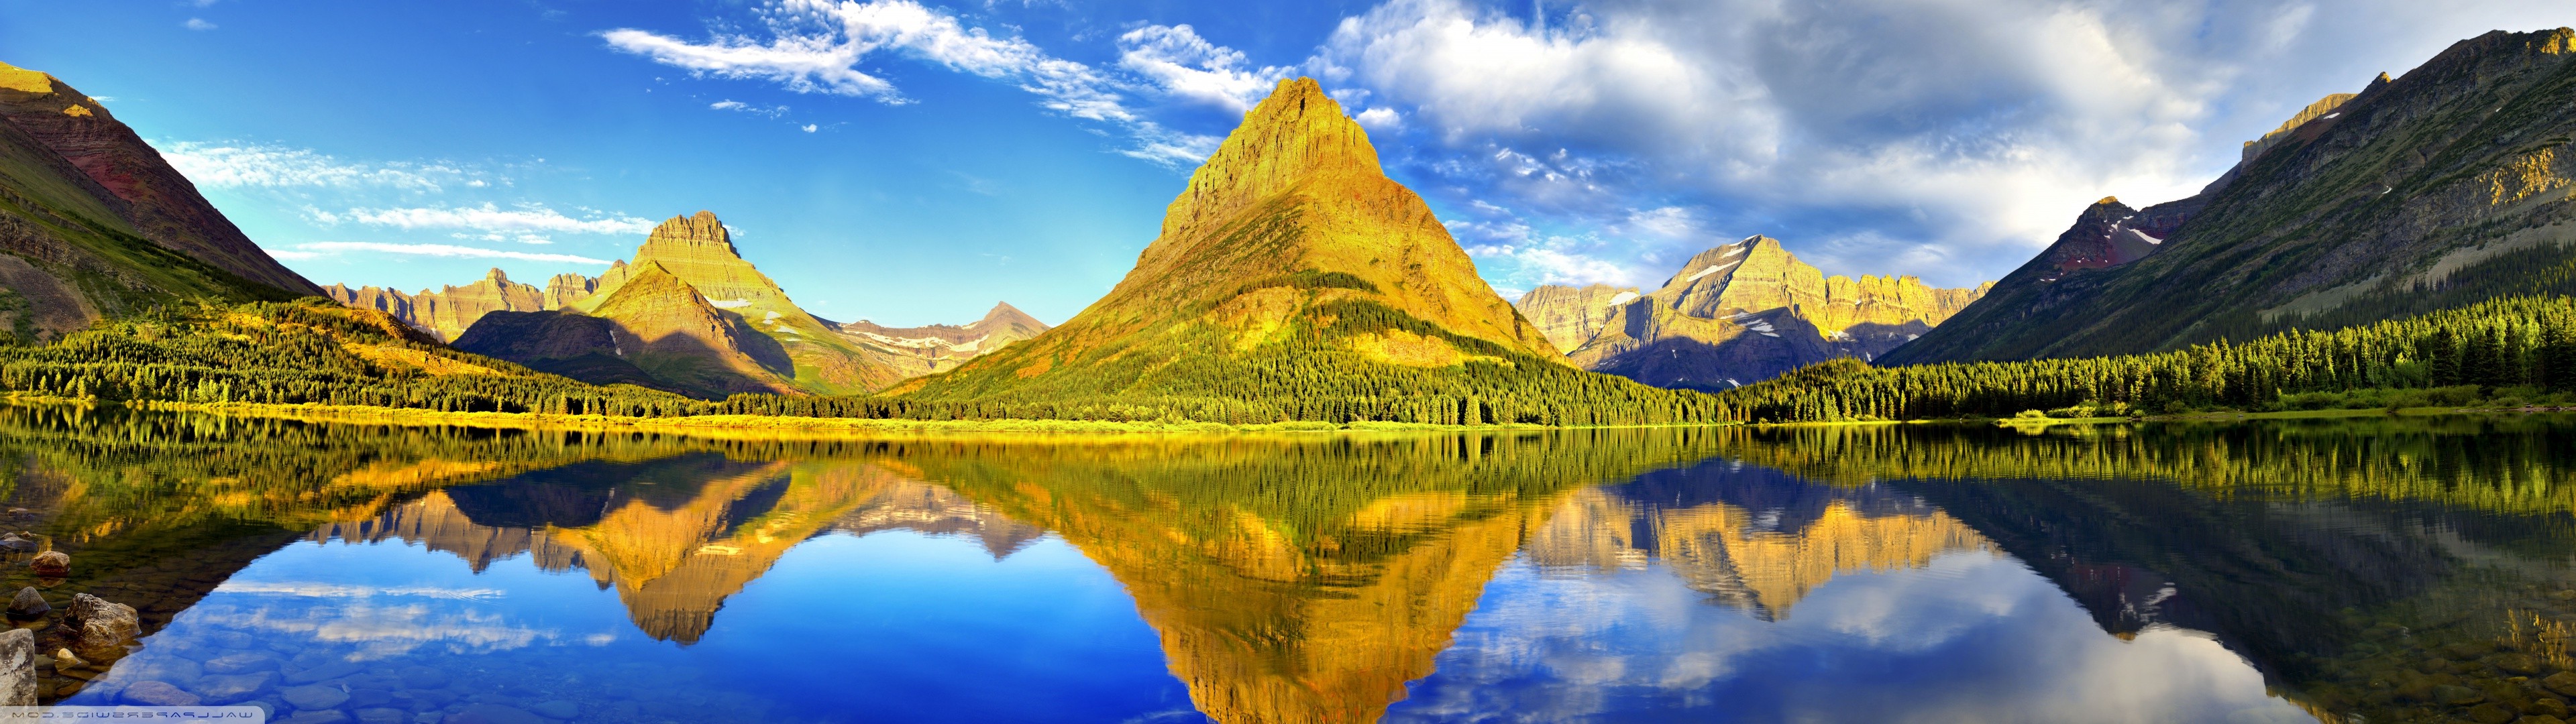 mountain, Landscape, Reflection, Lake Wallpaper